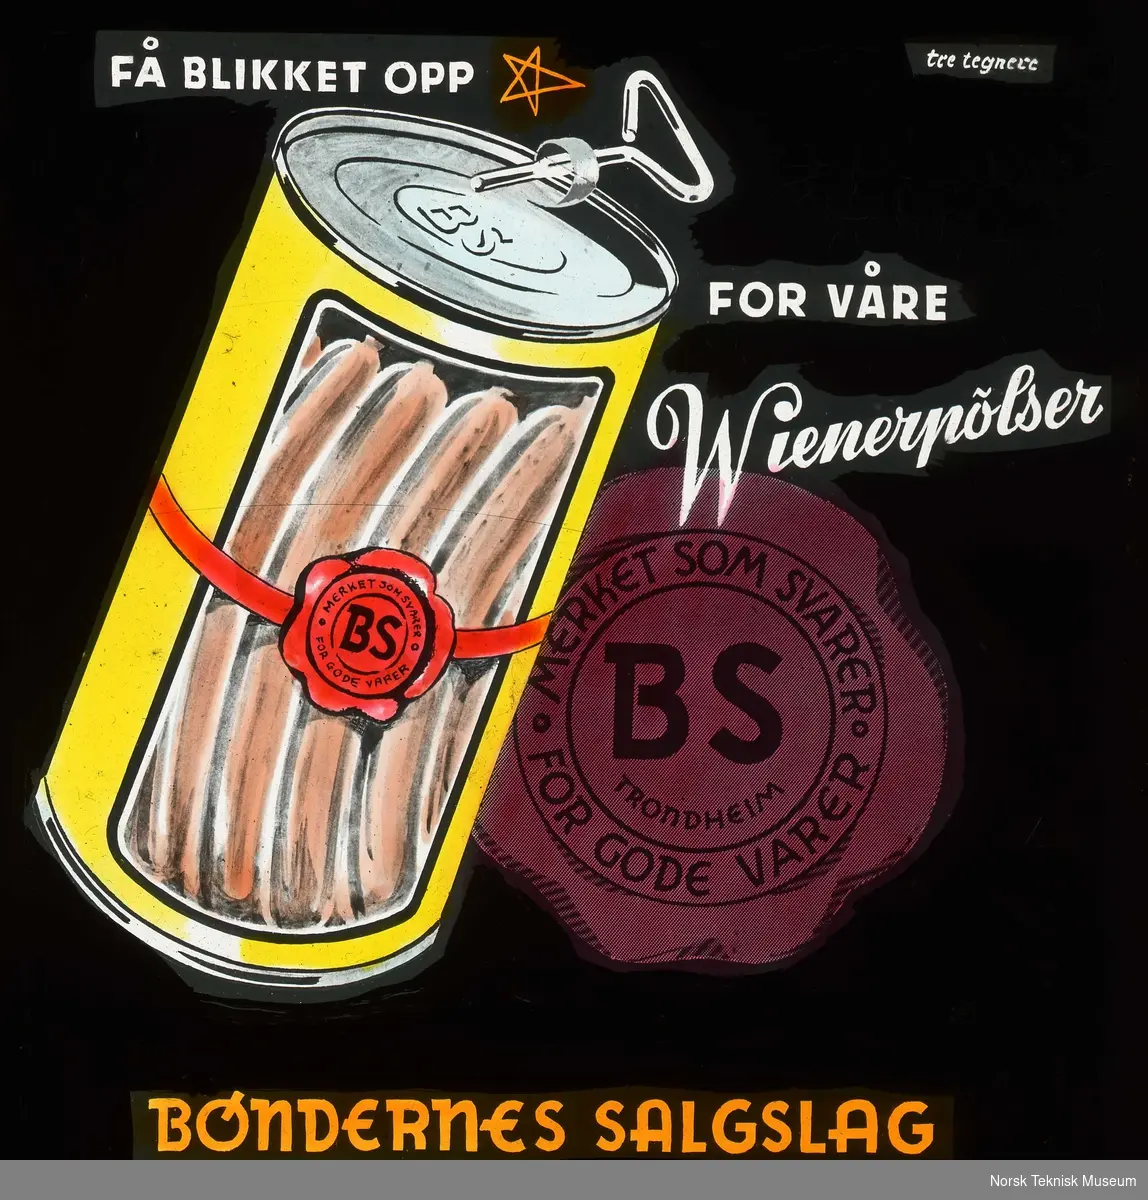 Kinoreklame for pølser fra Bøndernes Salgslag: Få blikket opp for våre wienerpølser. BS- merket som svarer for gode varer.